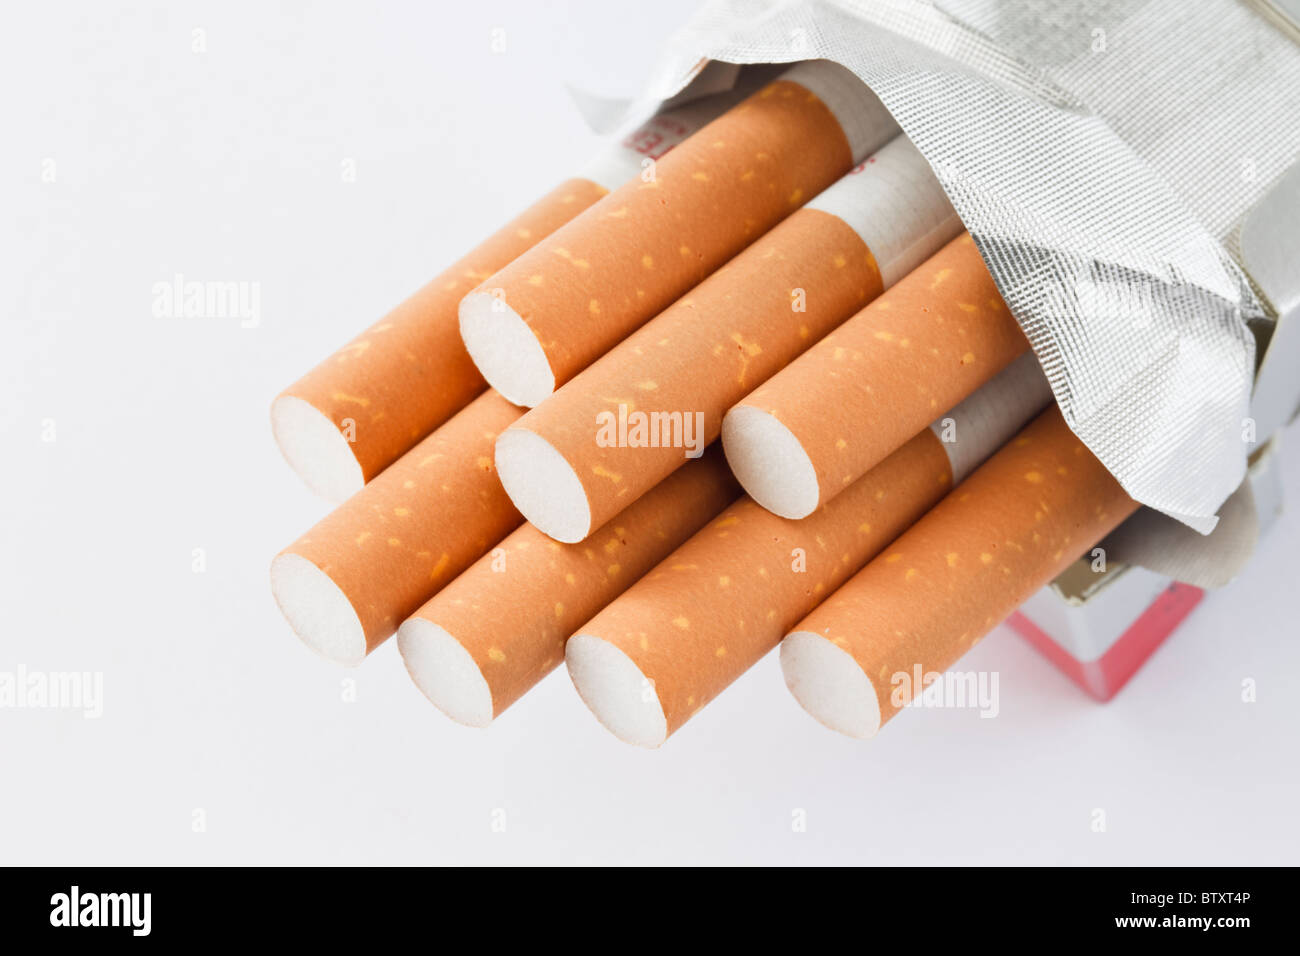 No-name-Paket von 10 Zigaretten auf einen einfachen Hintergrund öffnen. England, Großbritannien, Großbritannien Stockfoto